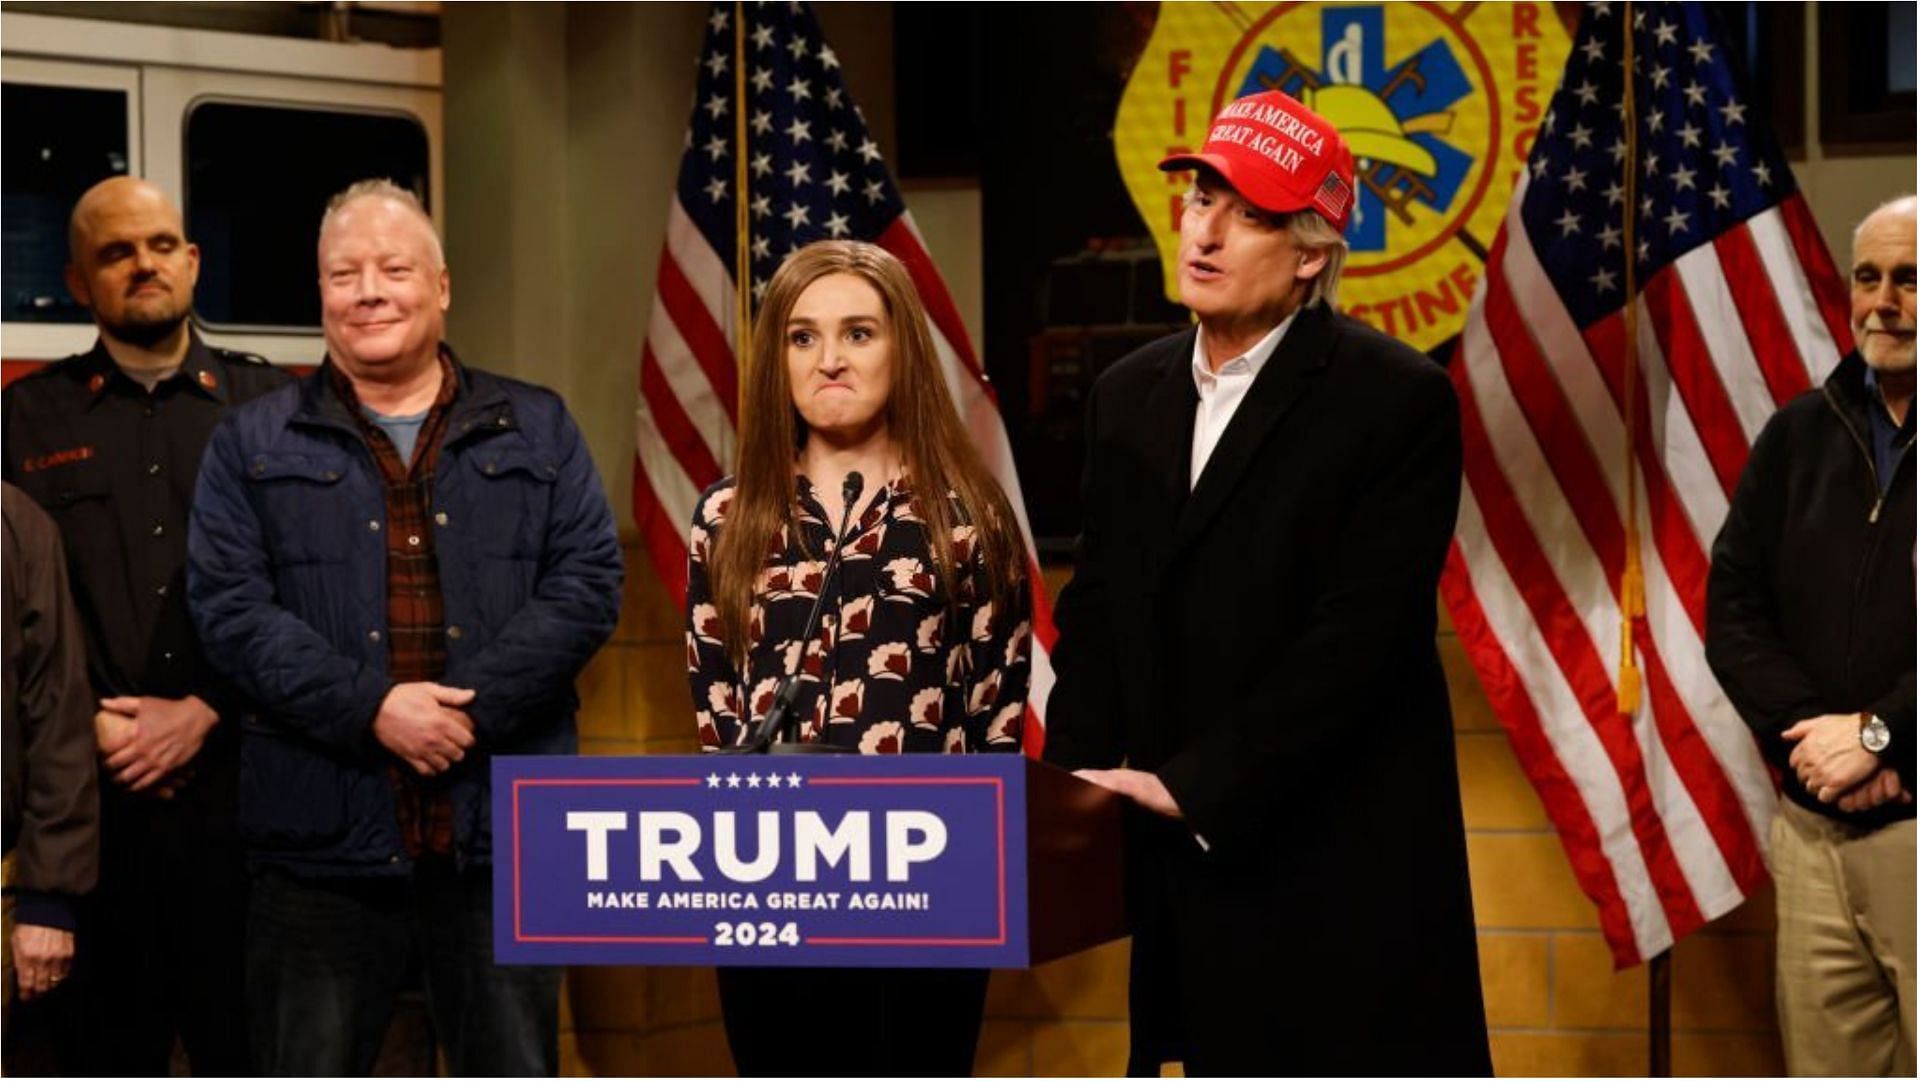 SNL recently made fun of Donald Trump